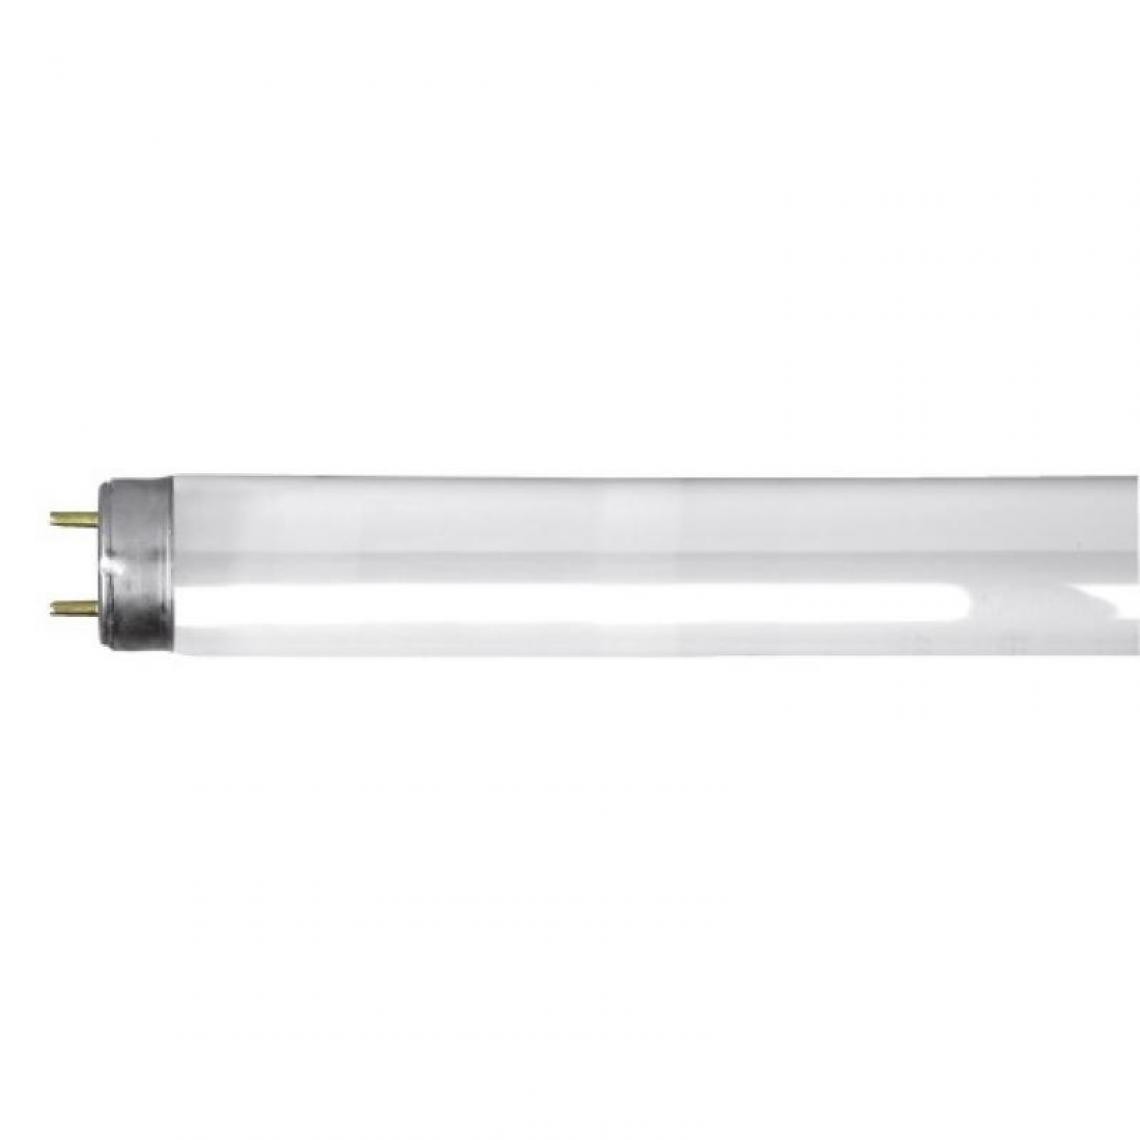 Ge Lighting - Tubes fluorescent T8 standard 36W 6400k par 25 pièces - Ampoules LED